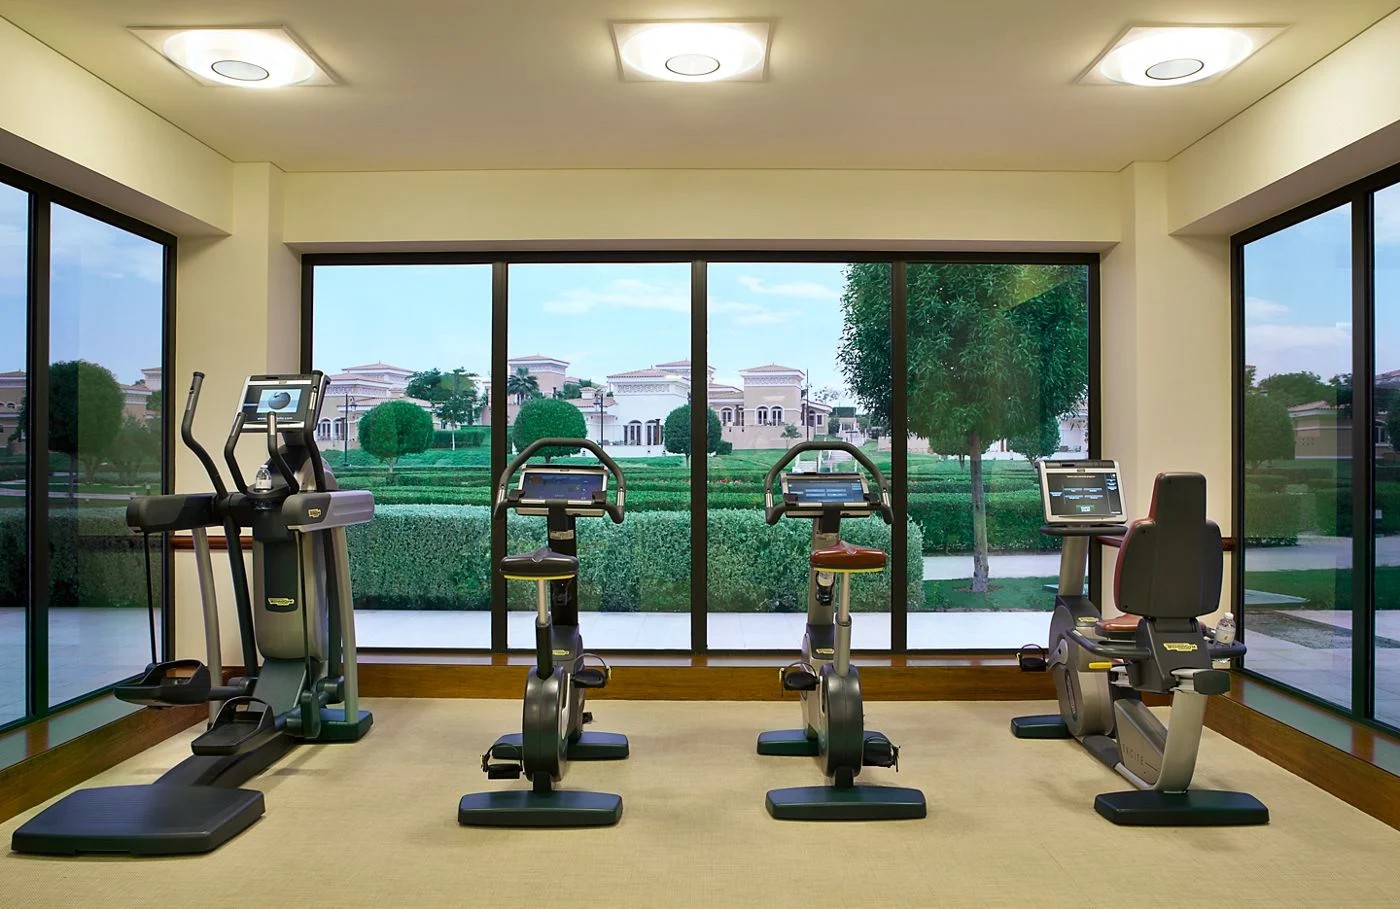 खेळाडूंना सराव आणि व्यायामासाठी २४ तास हेल्थ क्लबची सुविधाही या हॉटेलमध्ये आहे. (छायाचित्र सौजन्य - Ritz-Carlton)